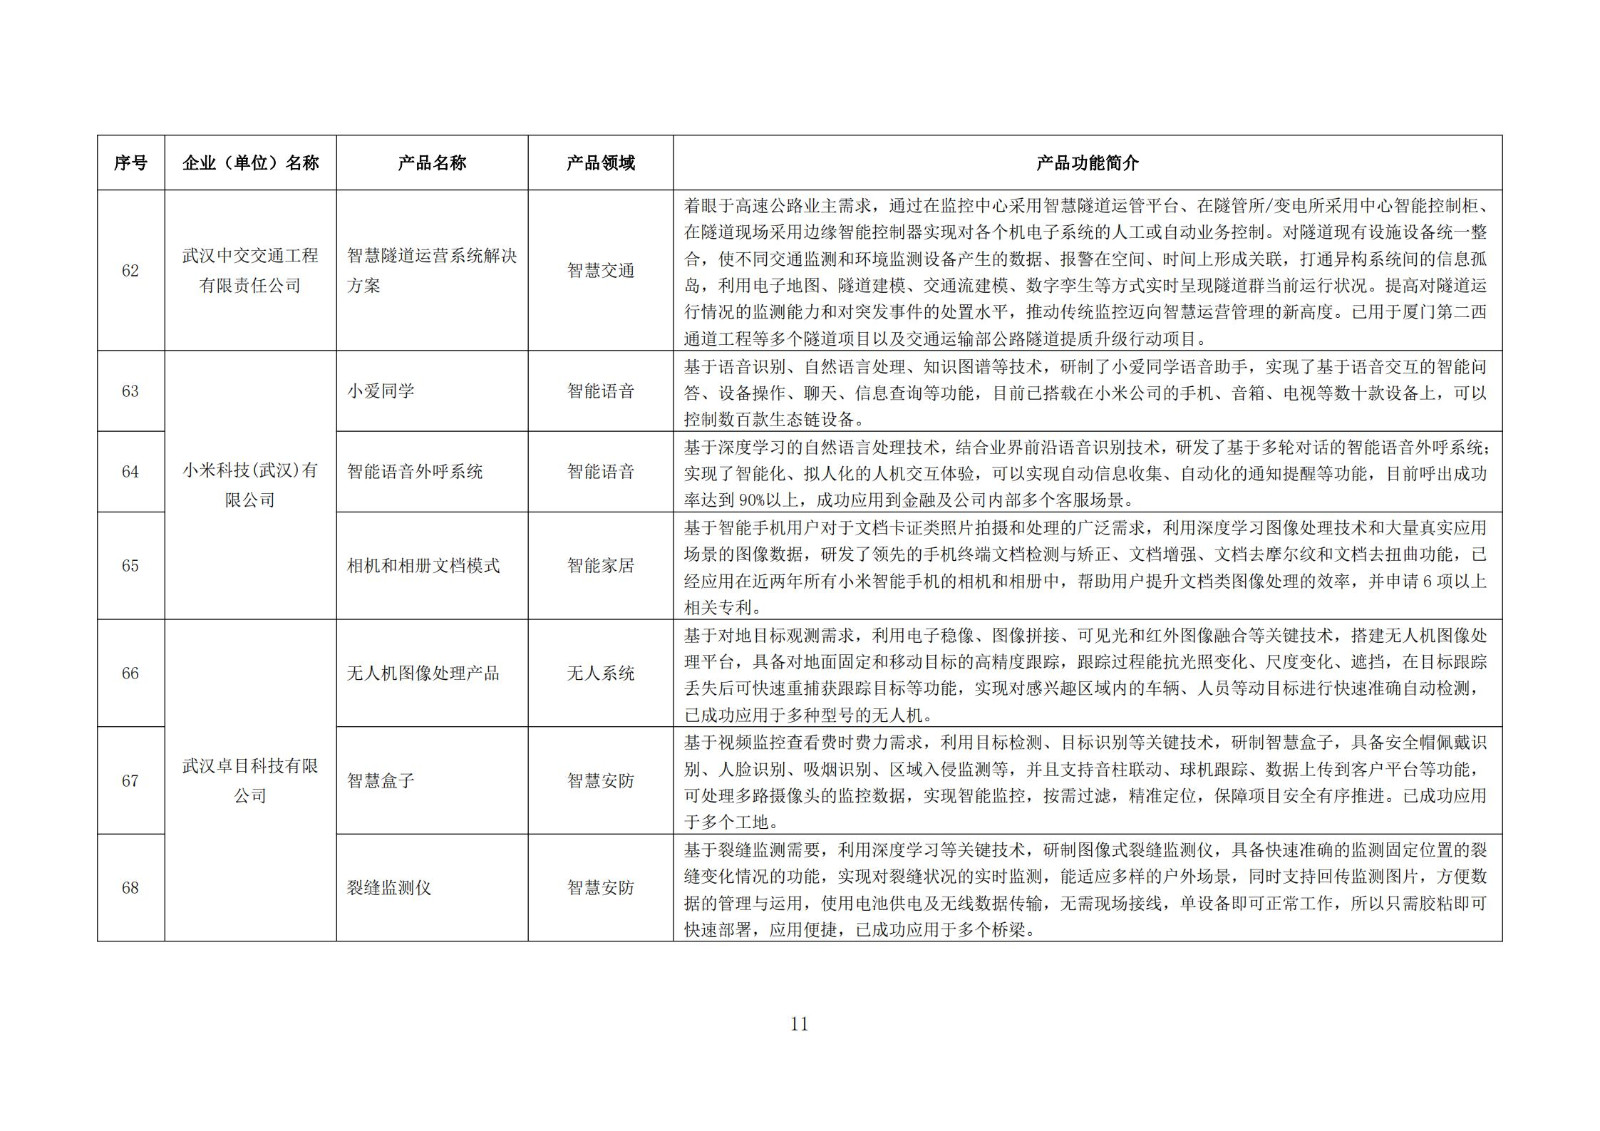 武汉新一代人工智能产品目录（首批）_10.jpg